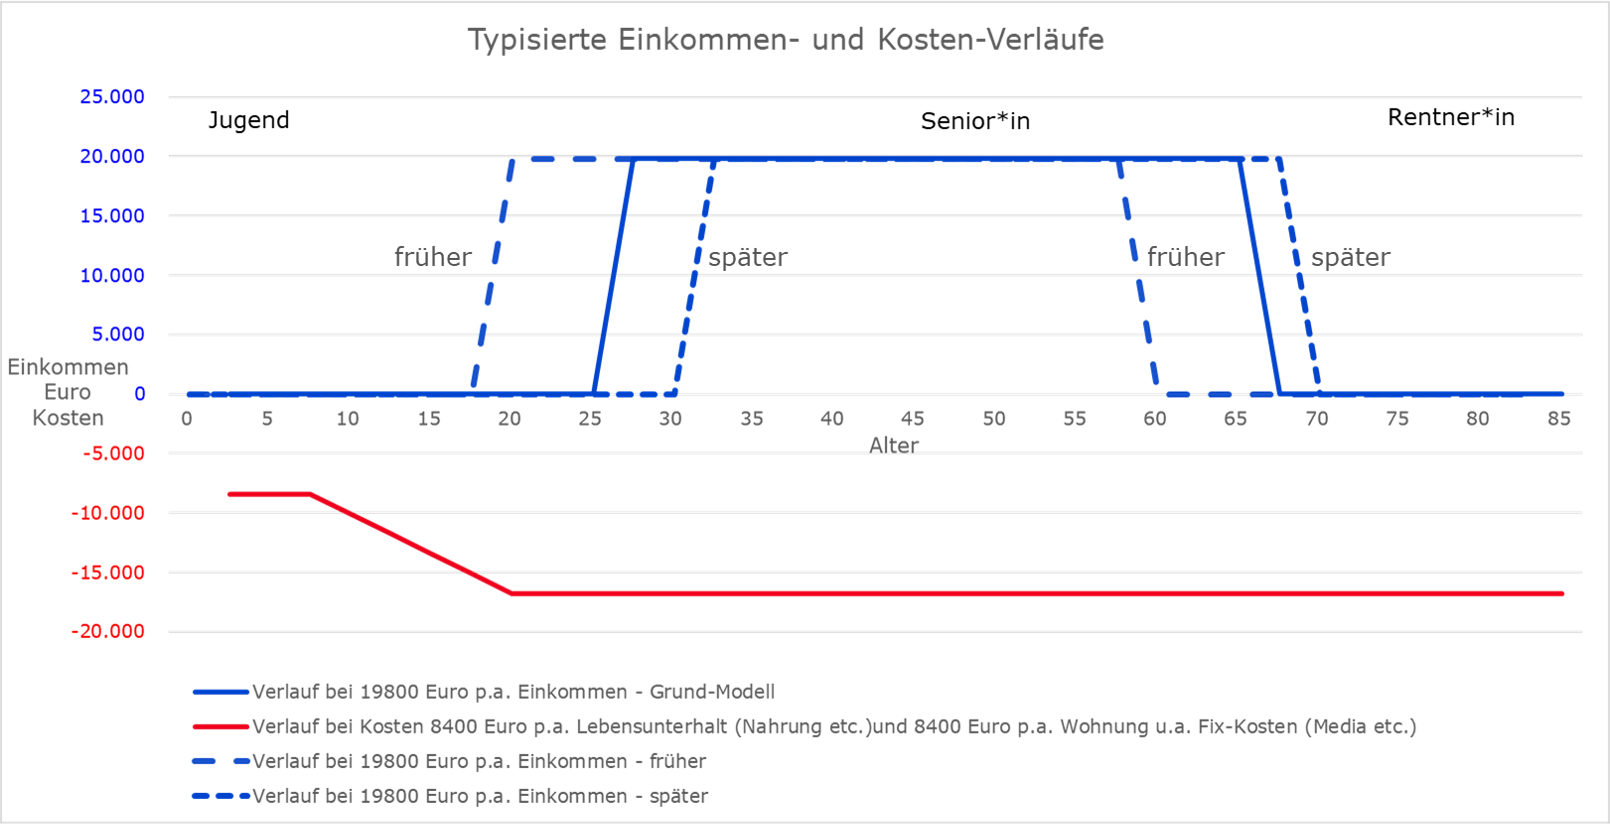 Abbildung: Verläufe von Einkommen (blaue Linien) im Zeitablauf bei früherem oder späterem Berufseinstieg (Illustration) <br>